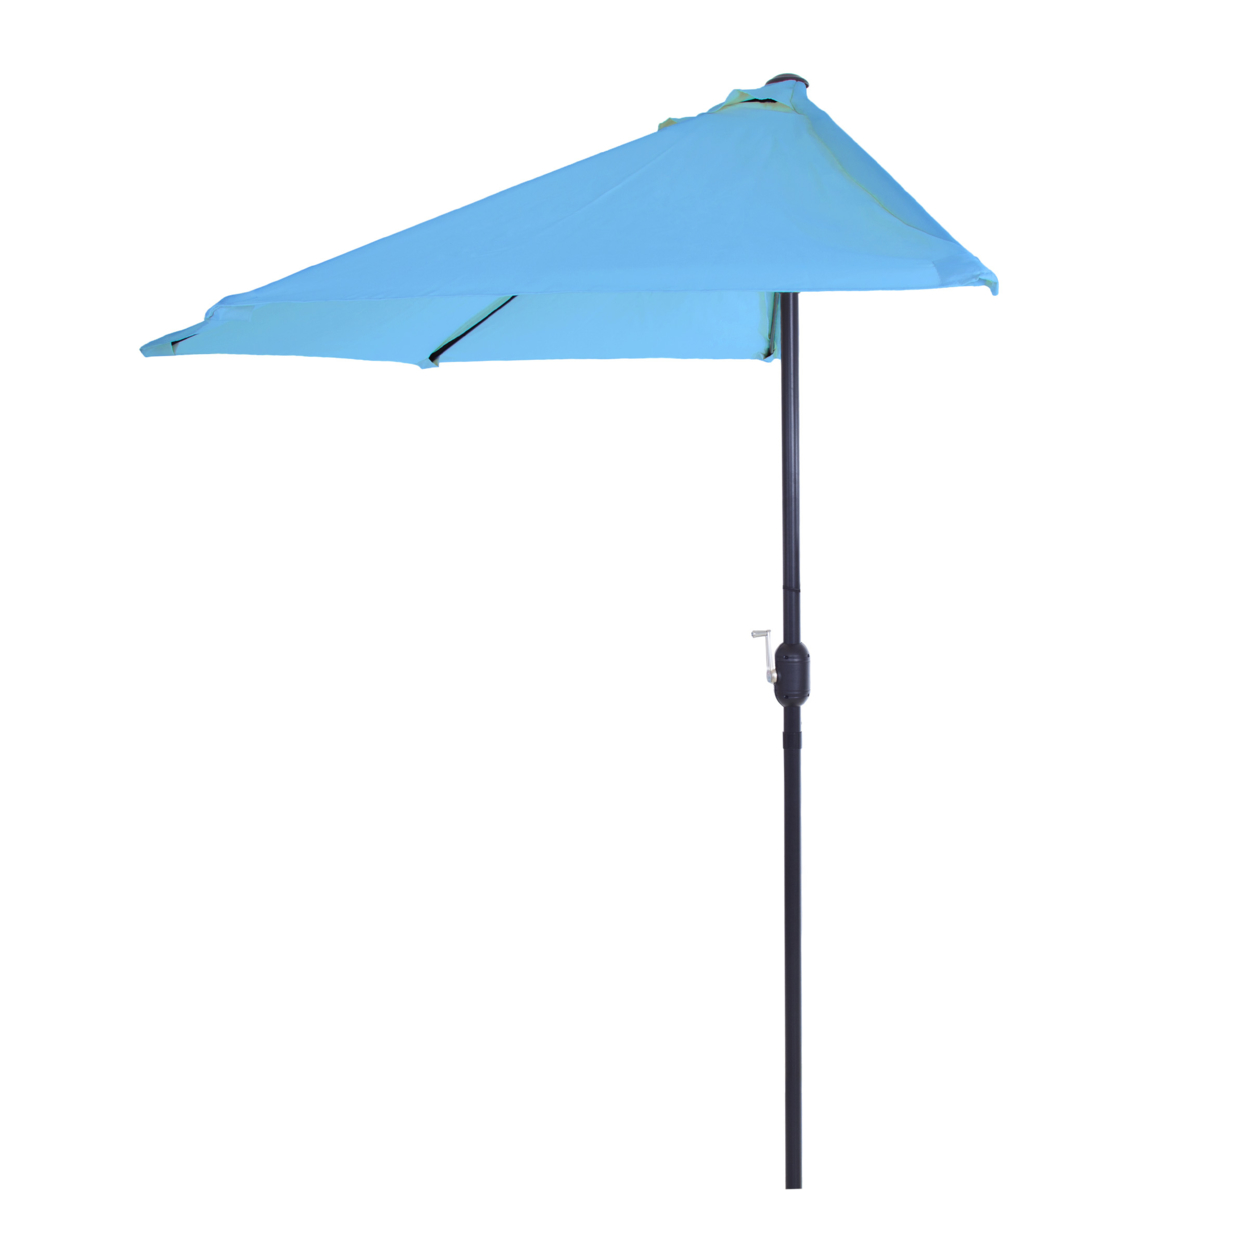 Half Round Patio Umbrella With Easy Crank- Small Space Outdoor Shade Umbrella Blue